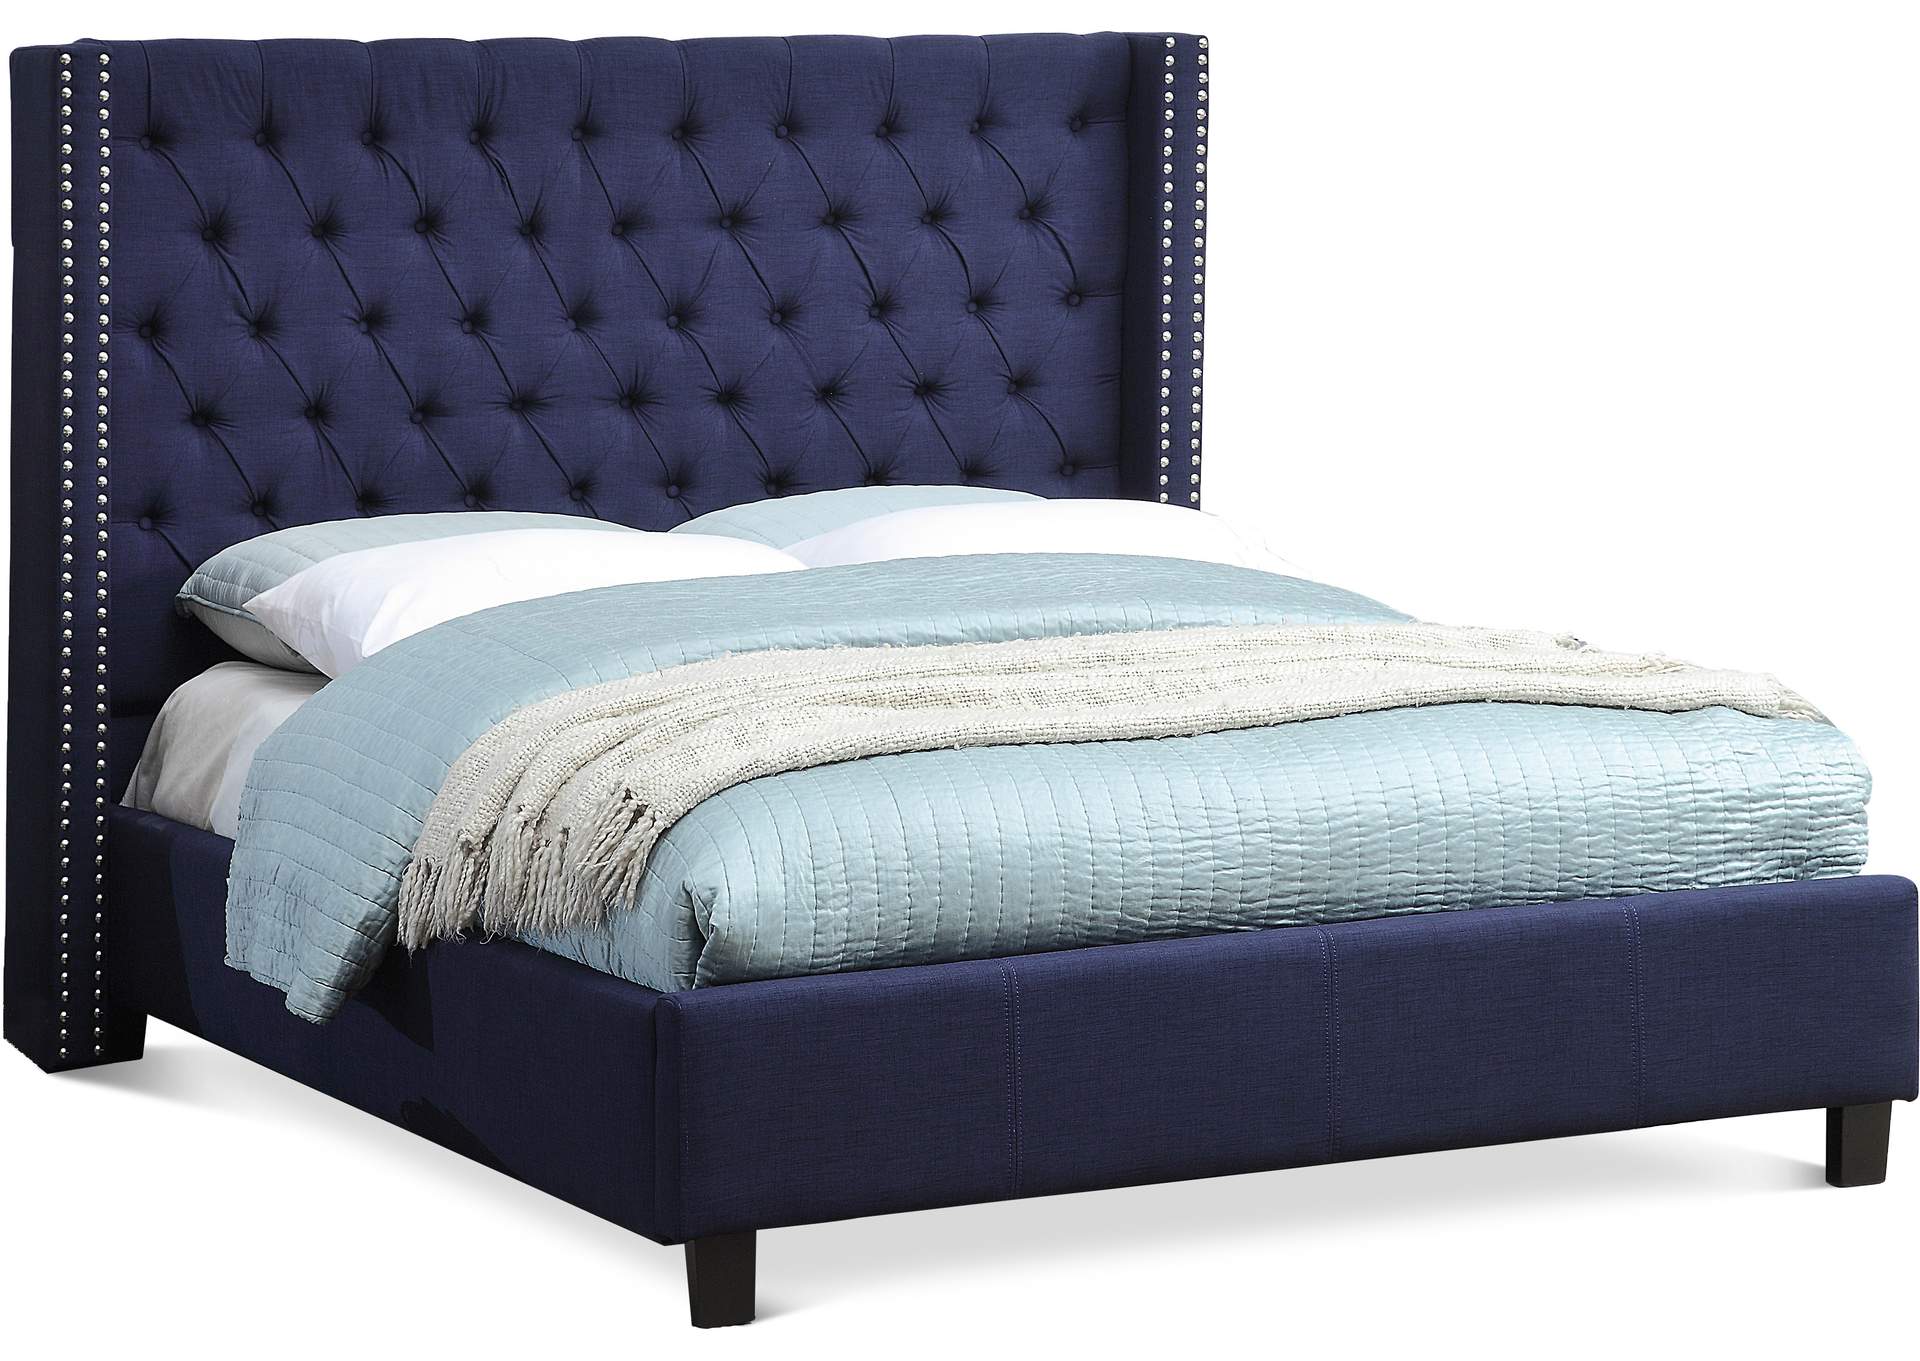 Ashton Navy Linen Textured Queen Bed,Meridian Furniture